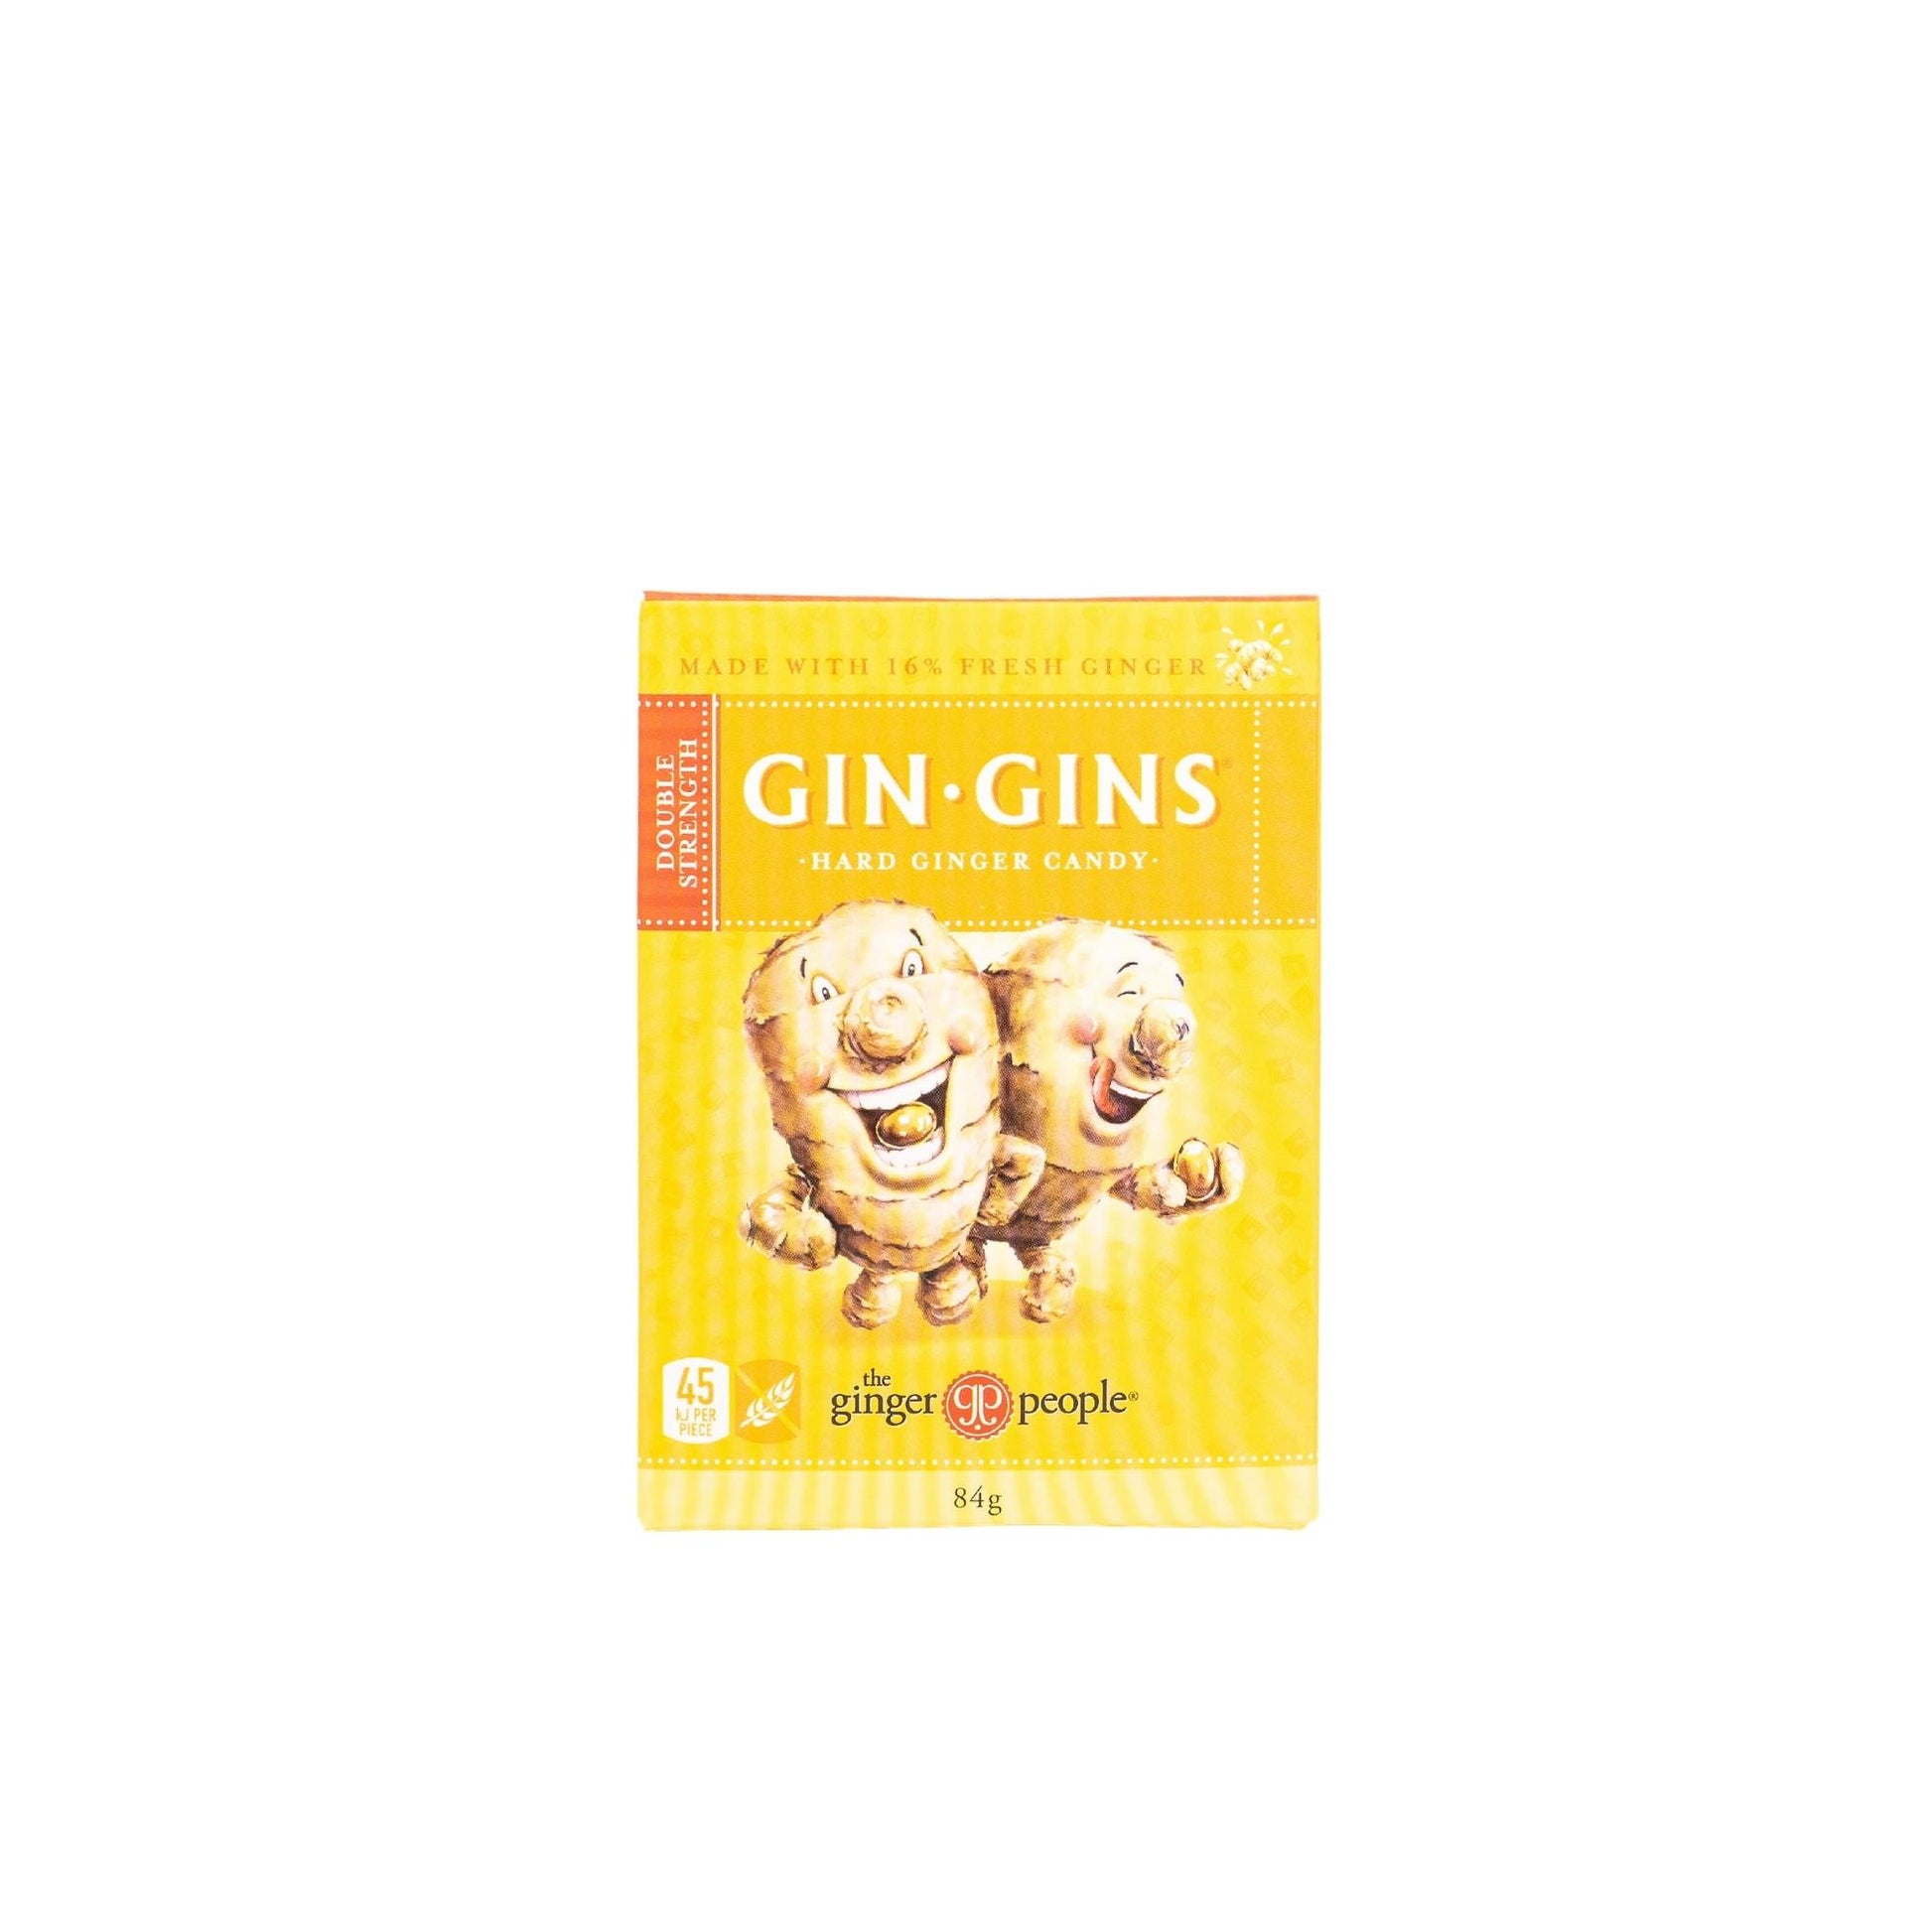 Gin Gins Hard Ginger Candy